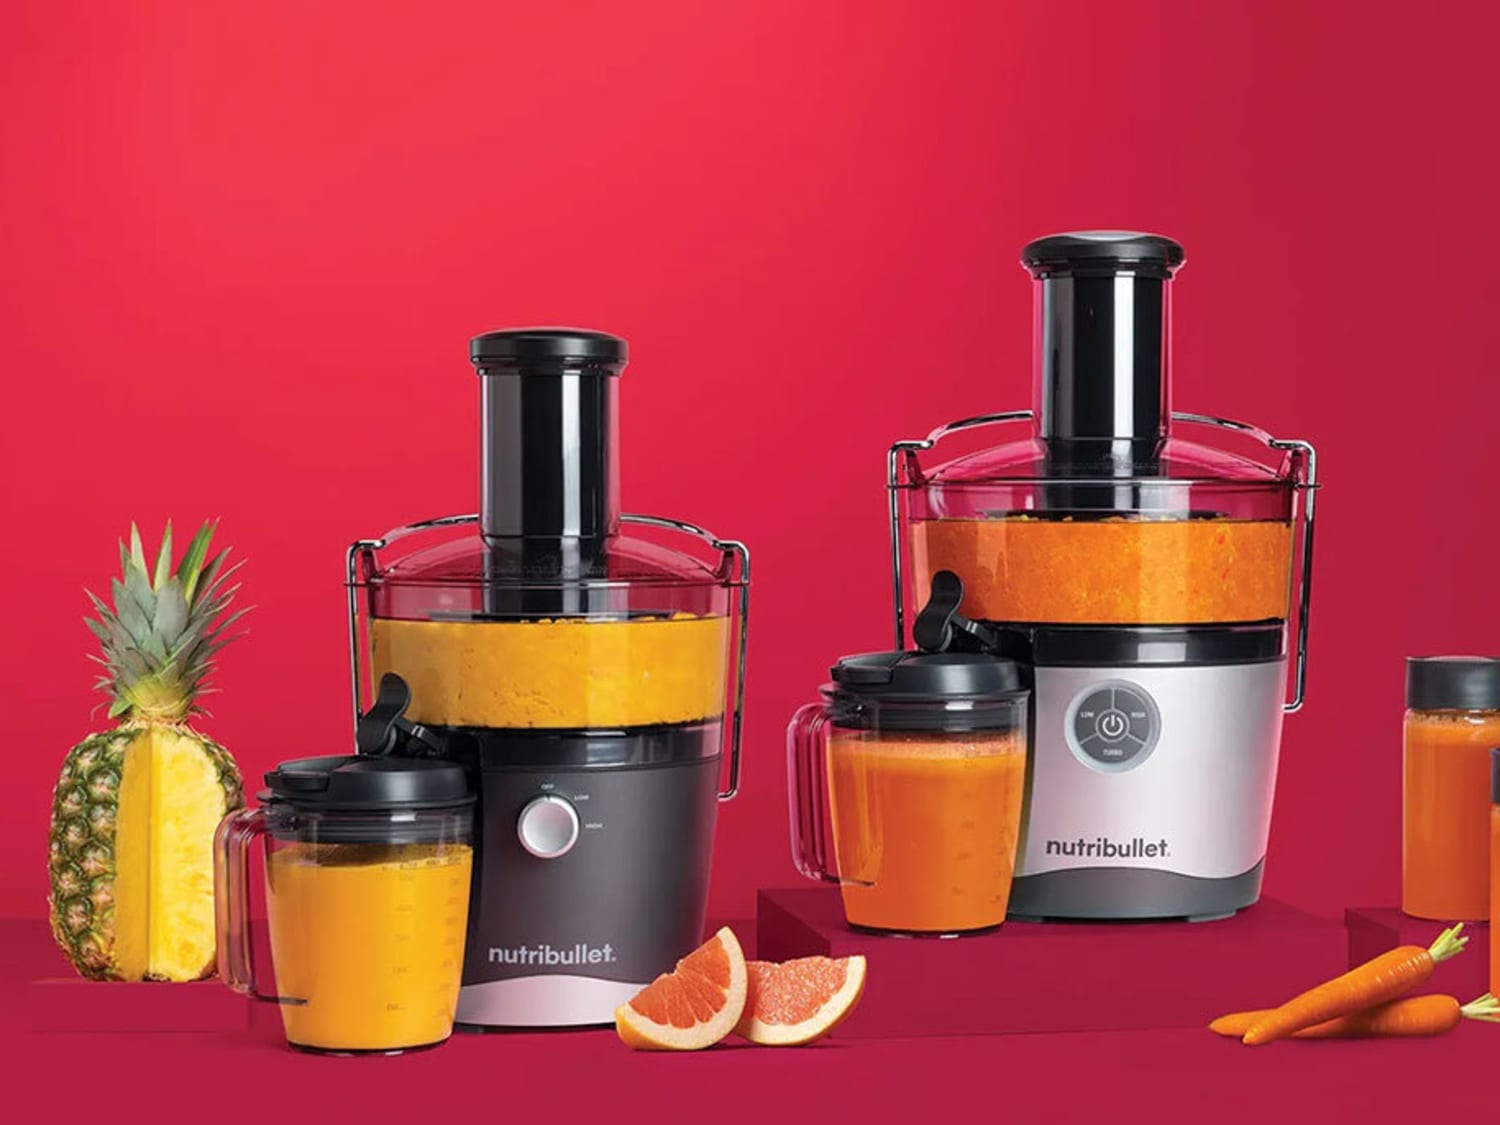 nutribullet - Orange juice anyone? The NutriBullet Juicer Pro